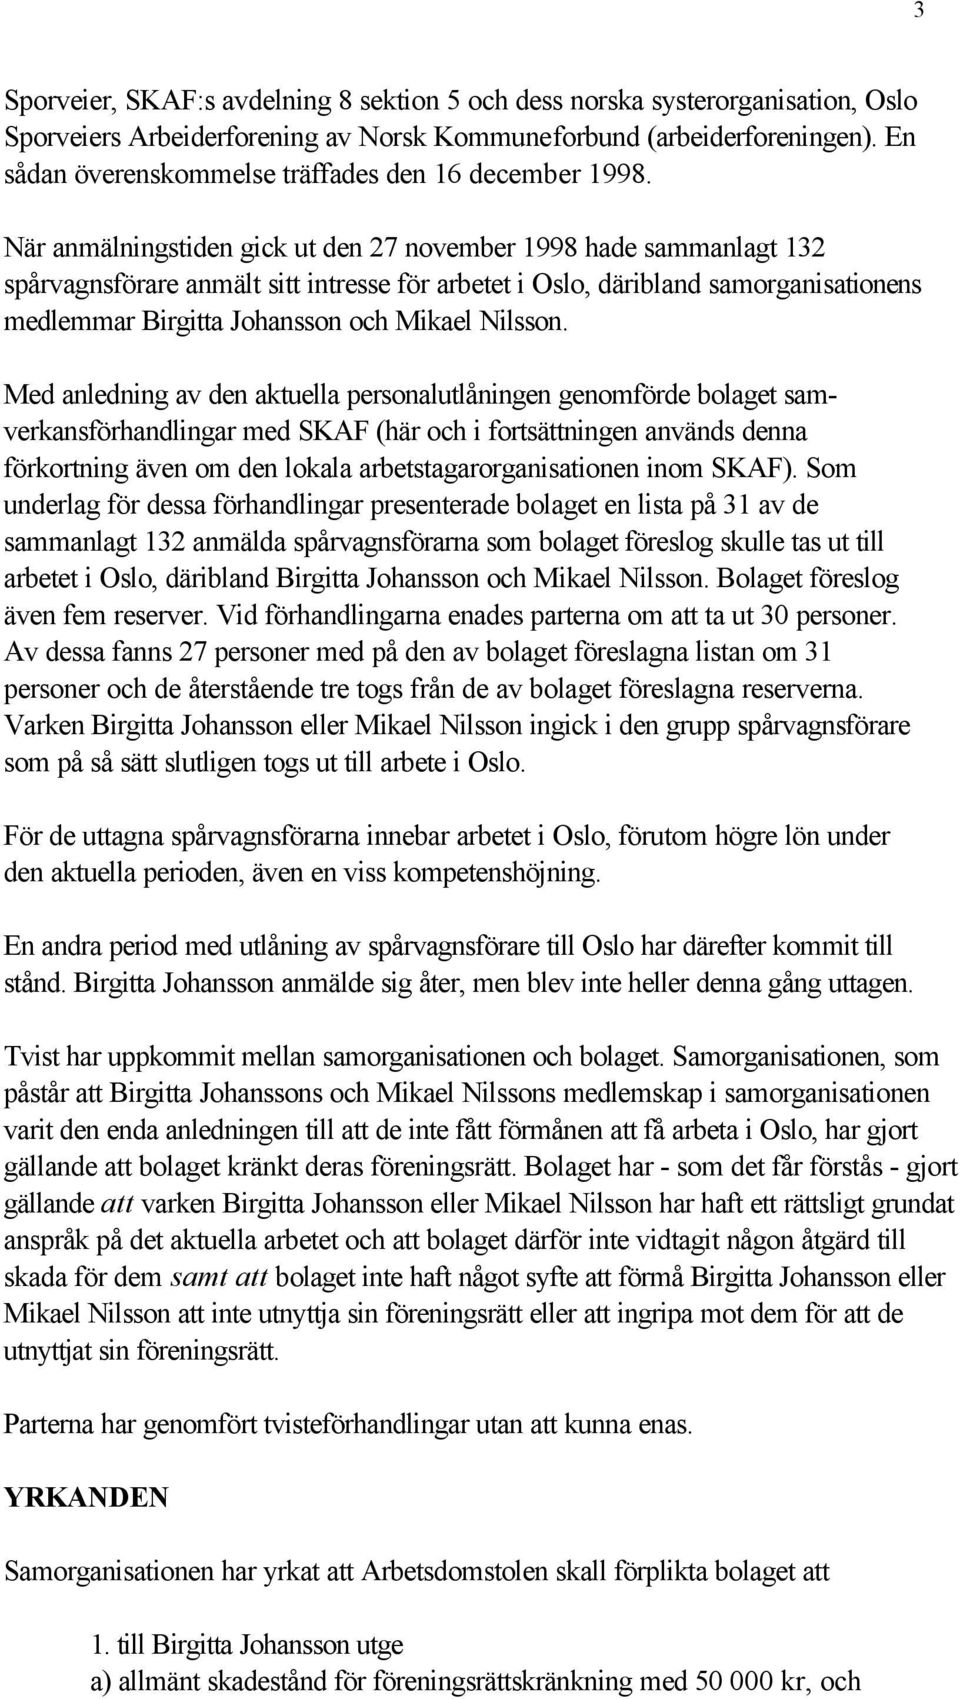 När anmälningstiden gick ut den 27 november 1998 hade sammanlagt 132 spårvagnsförare anmält sitt intresse för arbetet i Oslo, däribland samorganisationens medlemmar Birgitta Johansson och Mikael